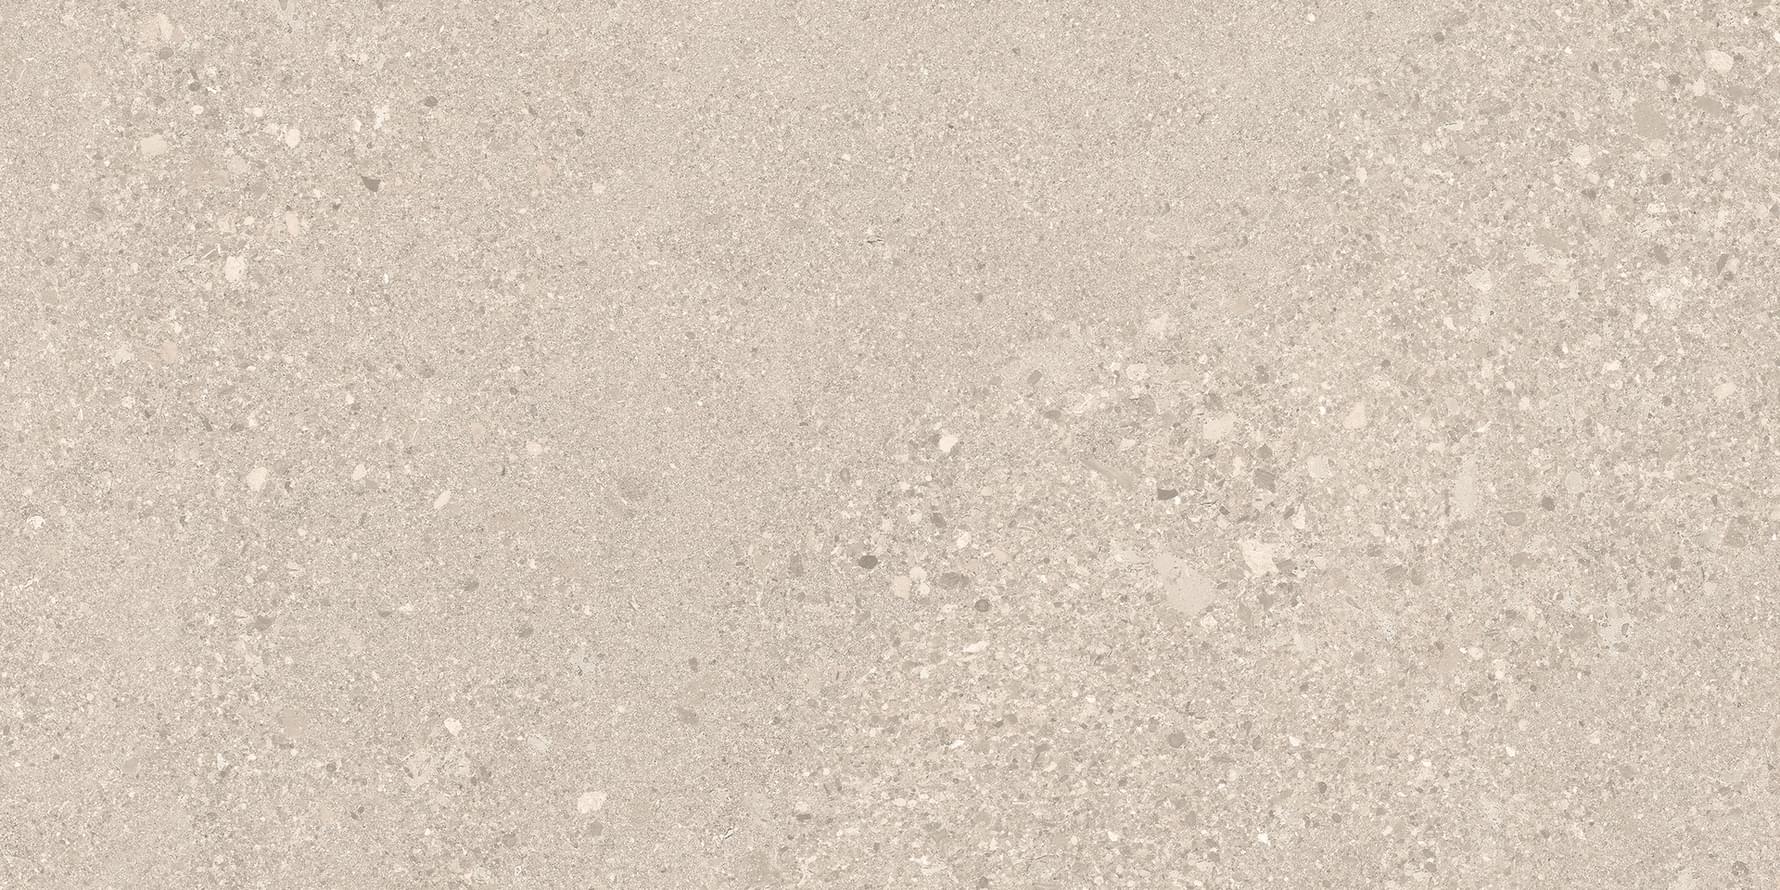 Ergon Grain Stone Sand Rough Grain Tecnica Antislip R11 30x60